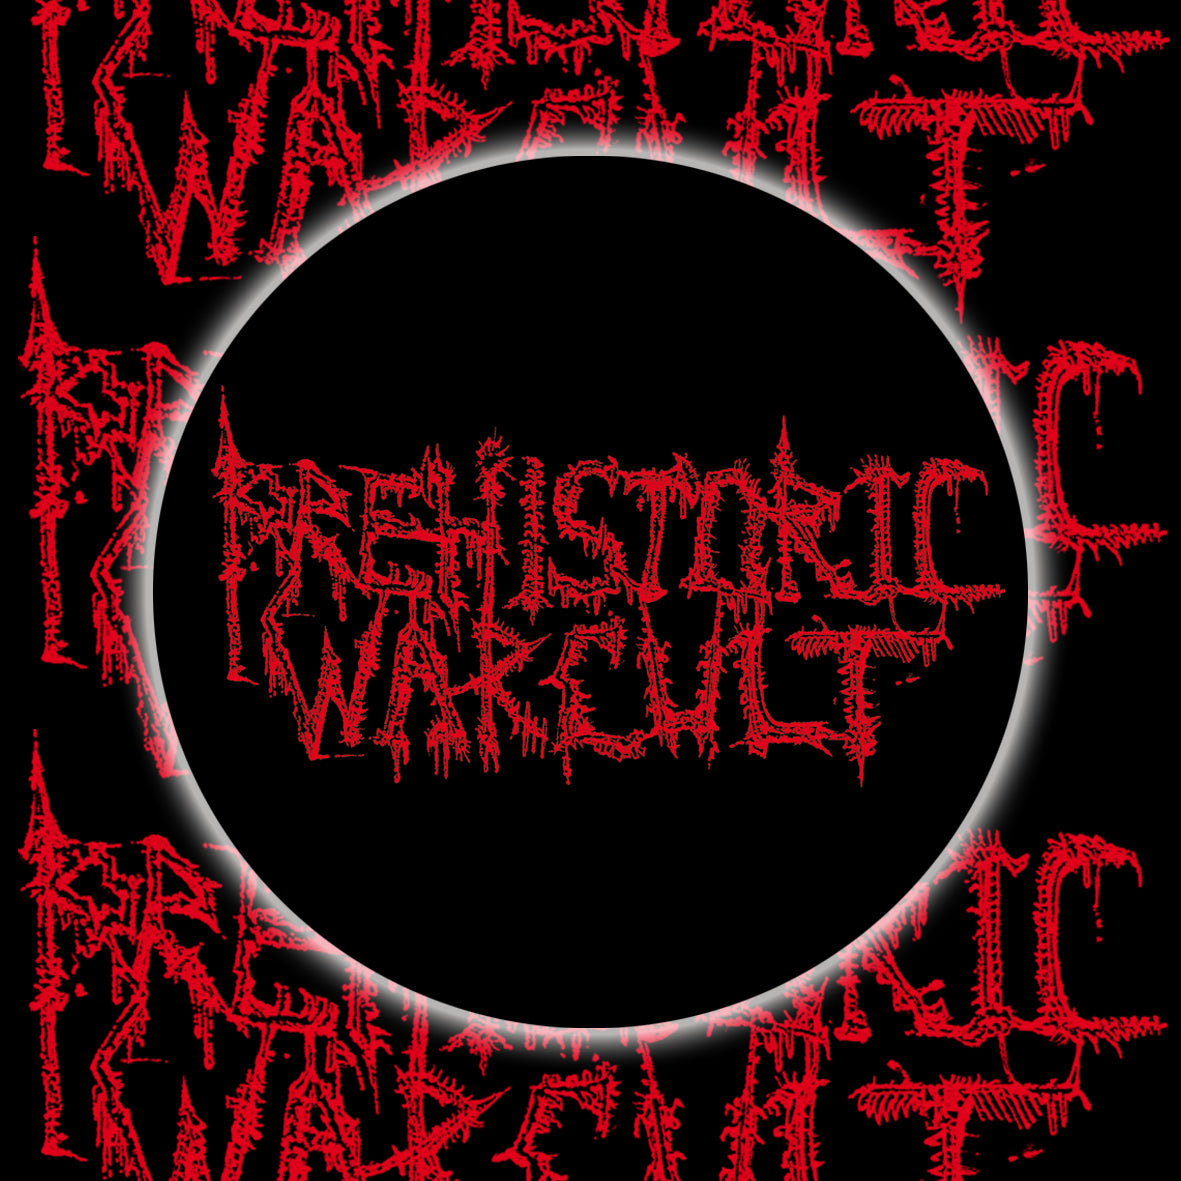 Prehistoric War Cult - Logo #2 Button